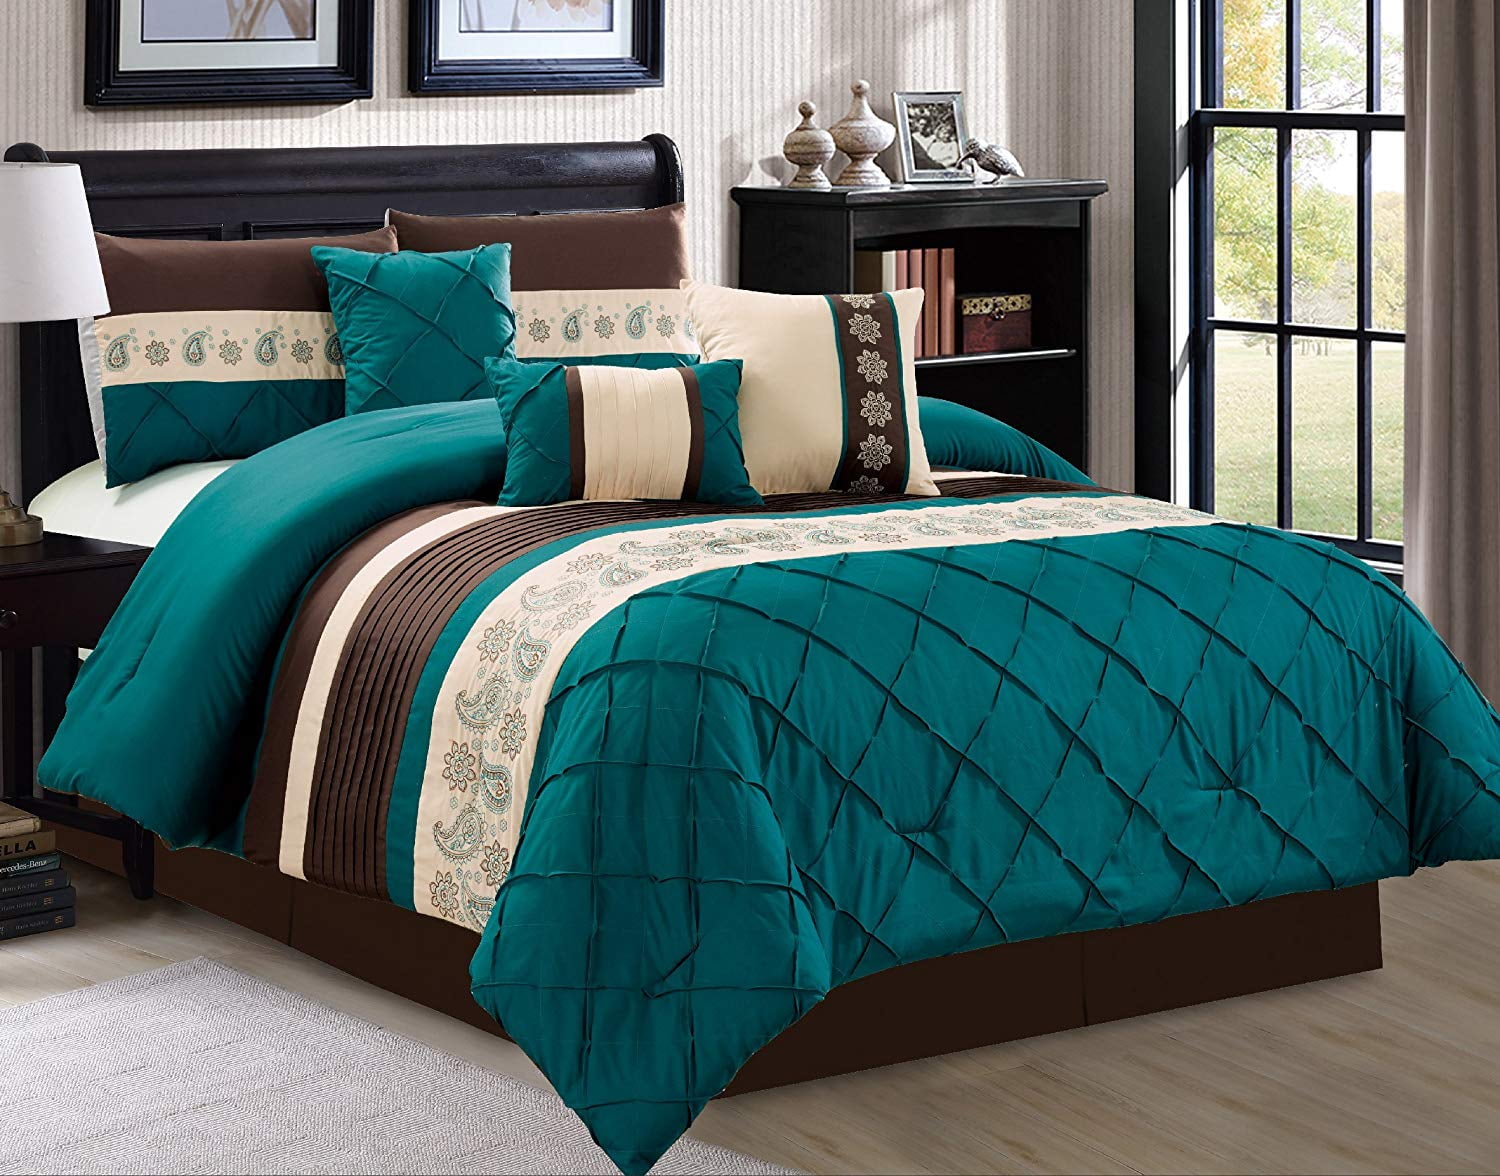 HGmart Bedding Comforter Set Bed In A Bag 5Pcs Microfiber Bedding Sets Blue Leaf 